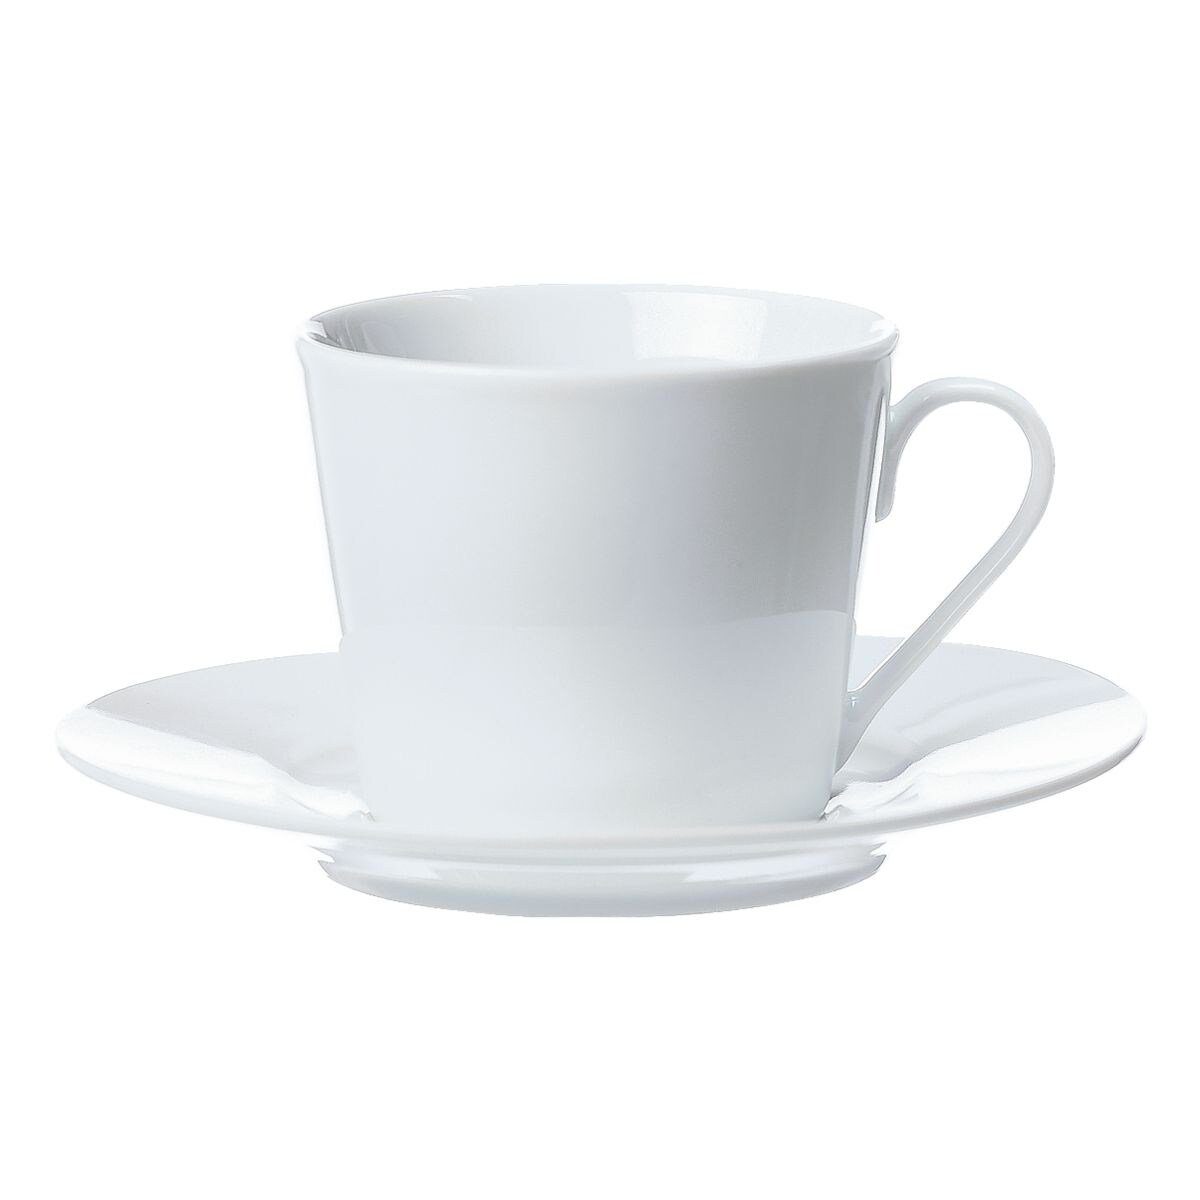 Ritzenhoff & Breker Kaffeeservice Bianco Kaffeetasse (4-tlg), mikrowellengeeignet mit Untertasse, spülmaschinen